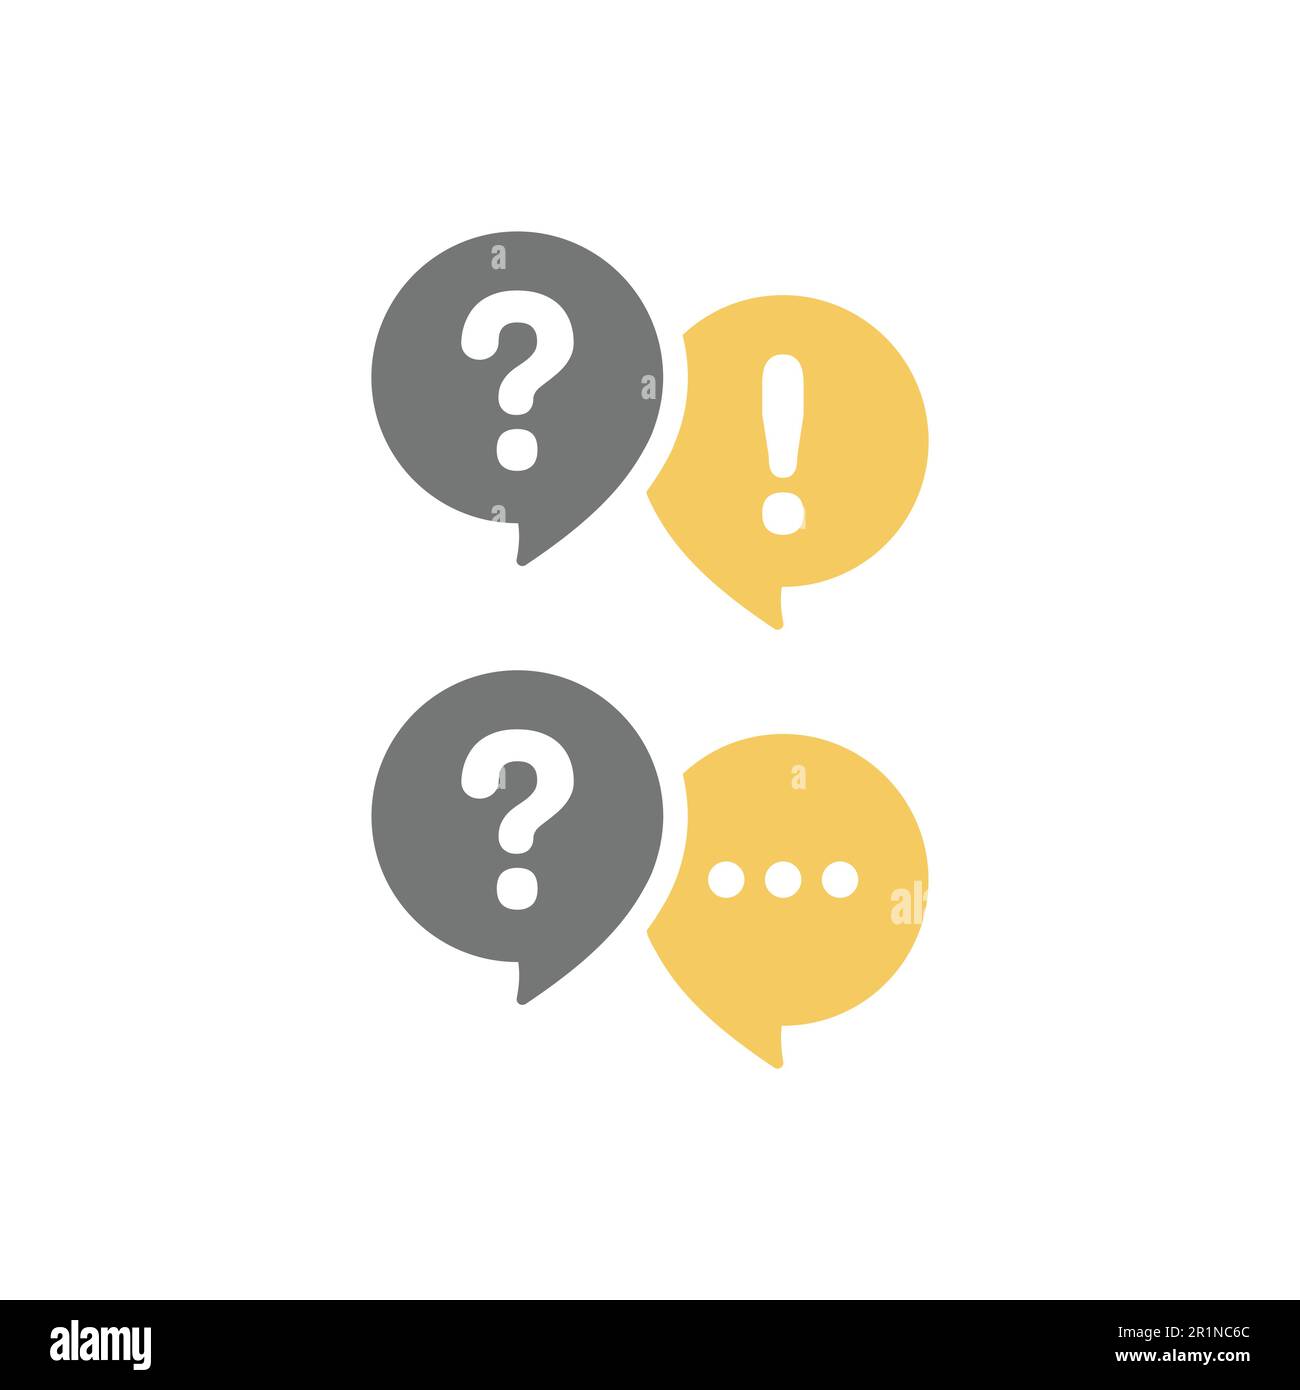 Fumetto della chat di conversazione con punto esclamativo e punto interrogativo. Guida e domande frequenti, comunicazione e conversazione vettore icona set. Illustrazione Vettoriale